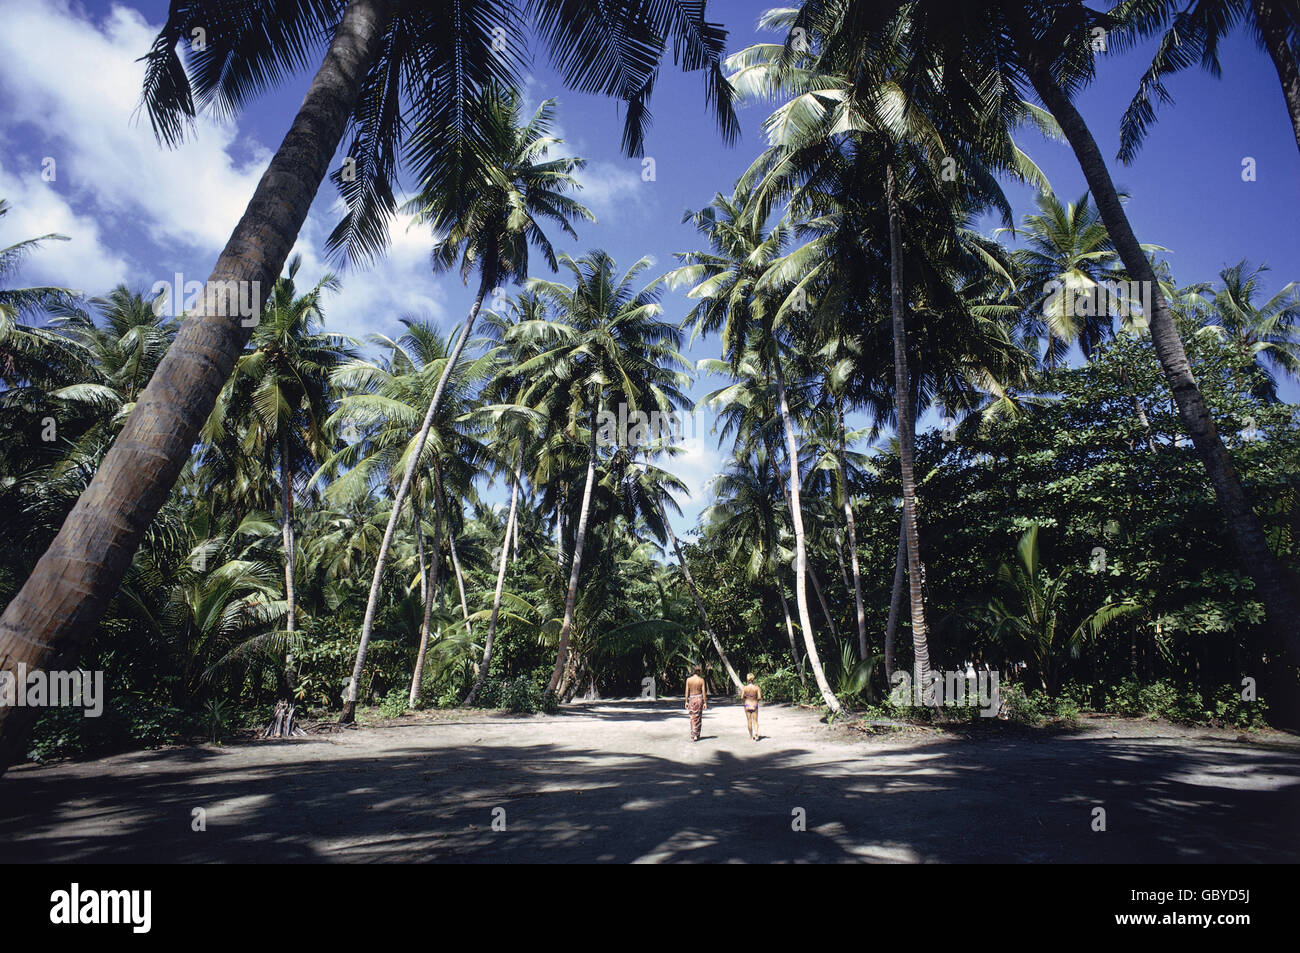 Geographie / Reisen, Malediven, Landschaften, Touristen in einem Palmenwald auf einem der Atolle, 1974, Additional-Rights-Clearences-not available Stockfoto